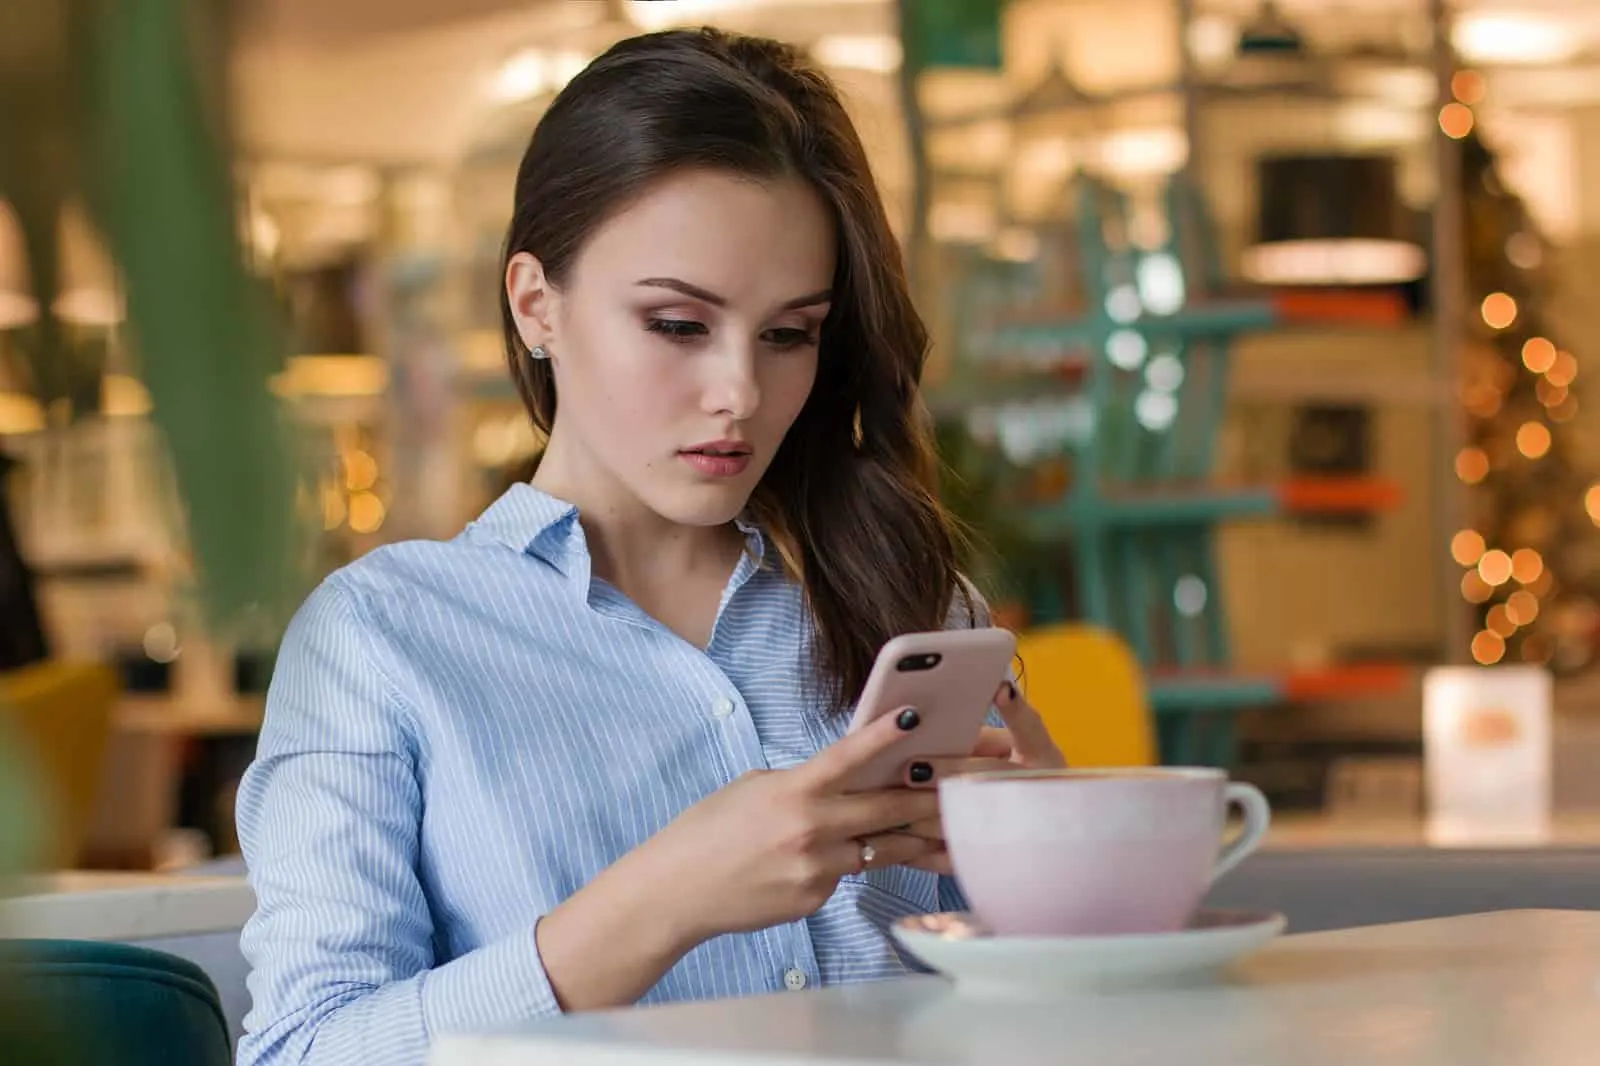 verwirrte Frau mit ihrem Smartphone im Café sitzen